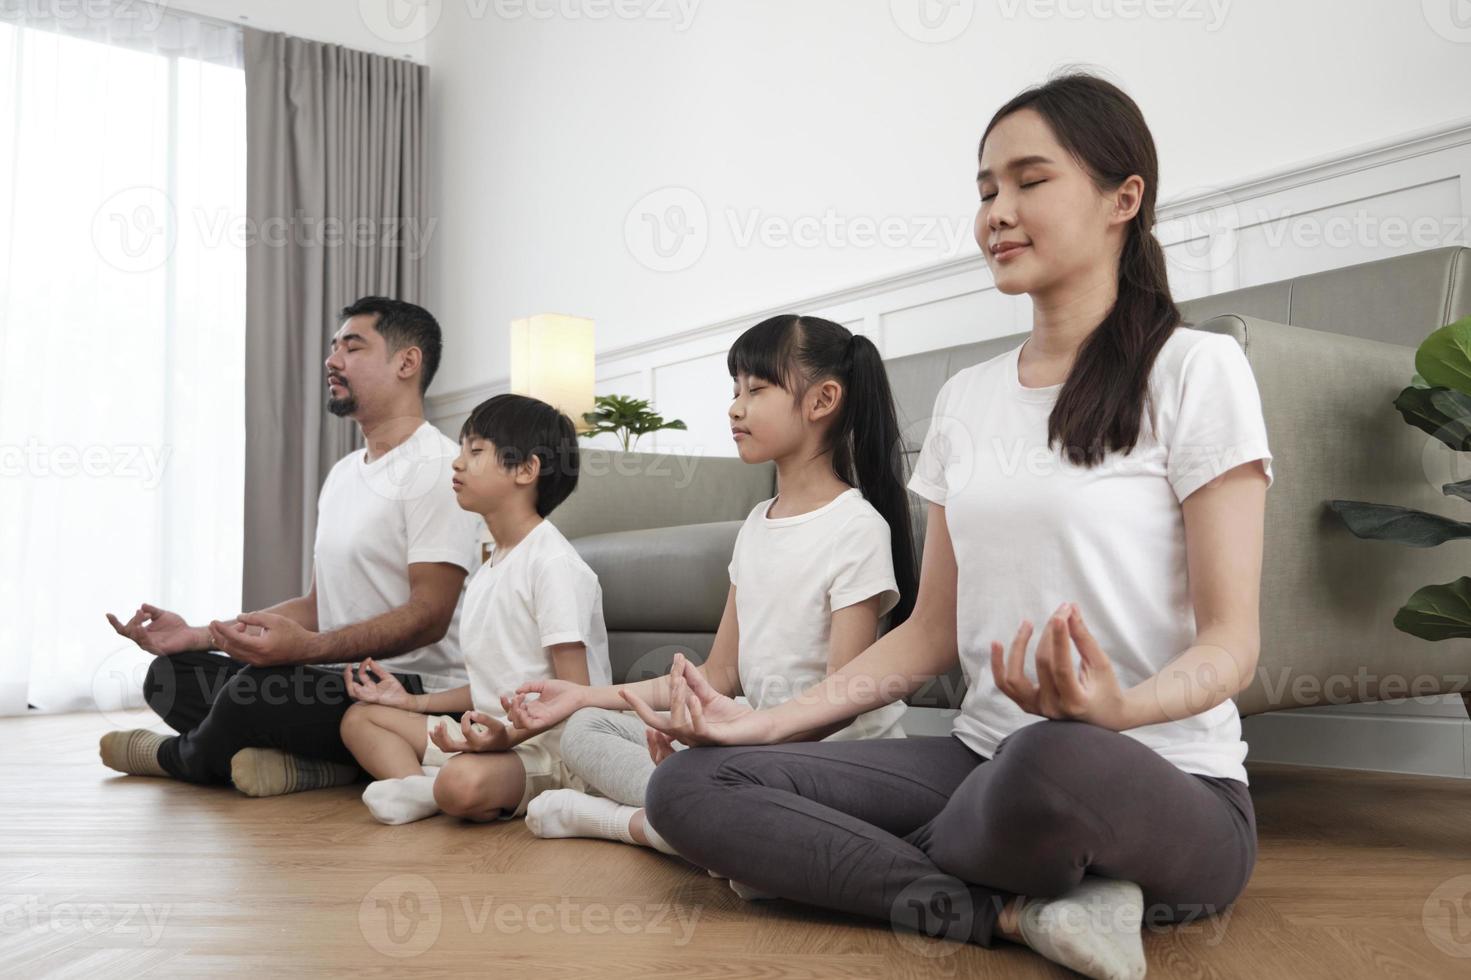 une famille thaïlandaise asiatique heureuse, des parents et des enfants s'assoient sur le sol du salon, ferment les yeux ensemble, méditent tranquillement en position du lotus et pratiquent un yoga sain, un week-end de style de vie à la maison. photo